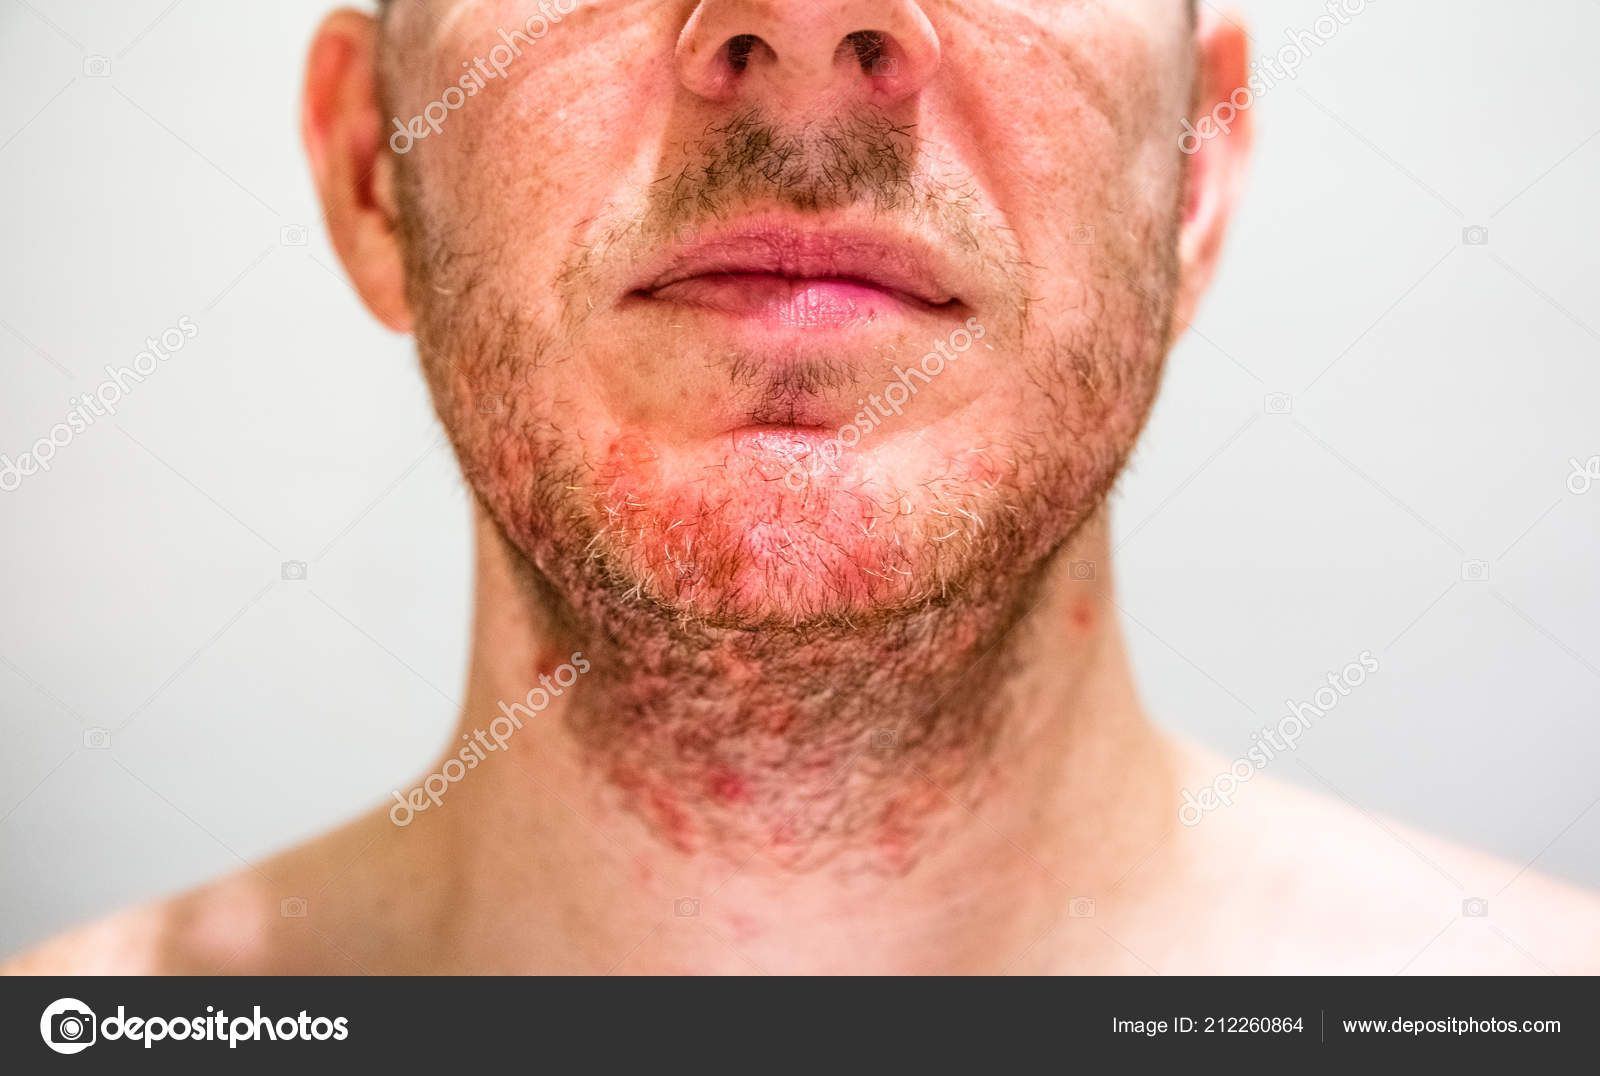 Seborrheic dermatitis face anus Seborrheic Dermatitis